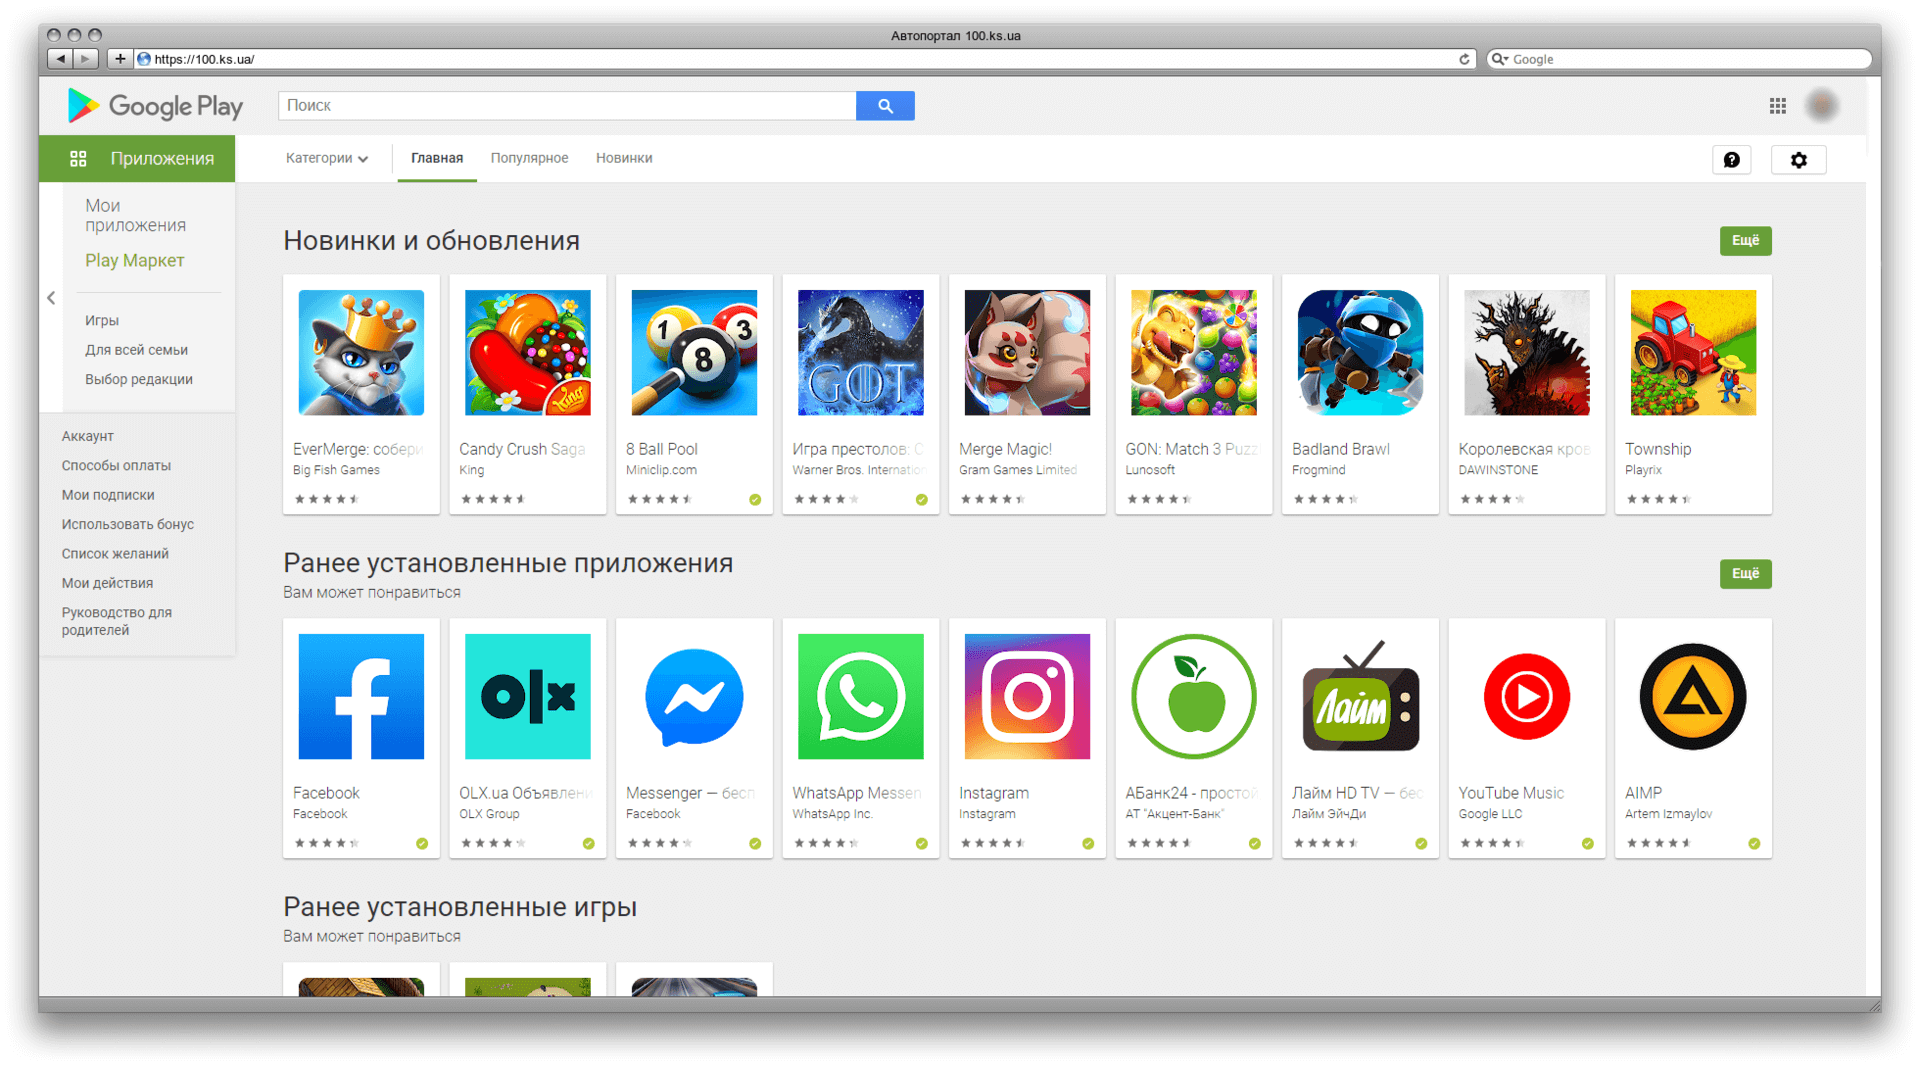 Google Play, Android, ссылка с гугл плей, социальная сеть